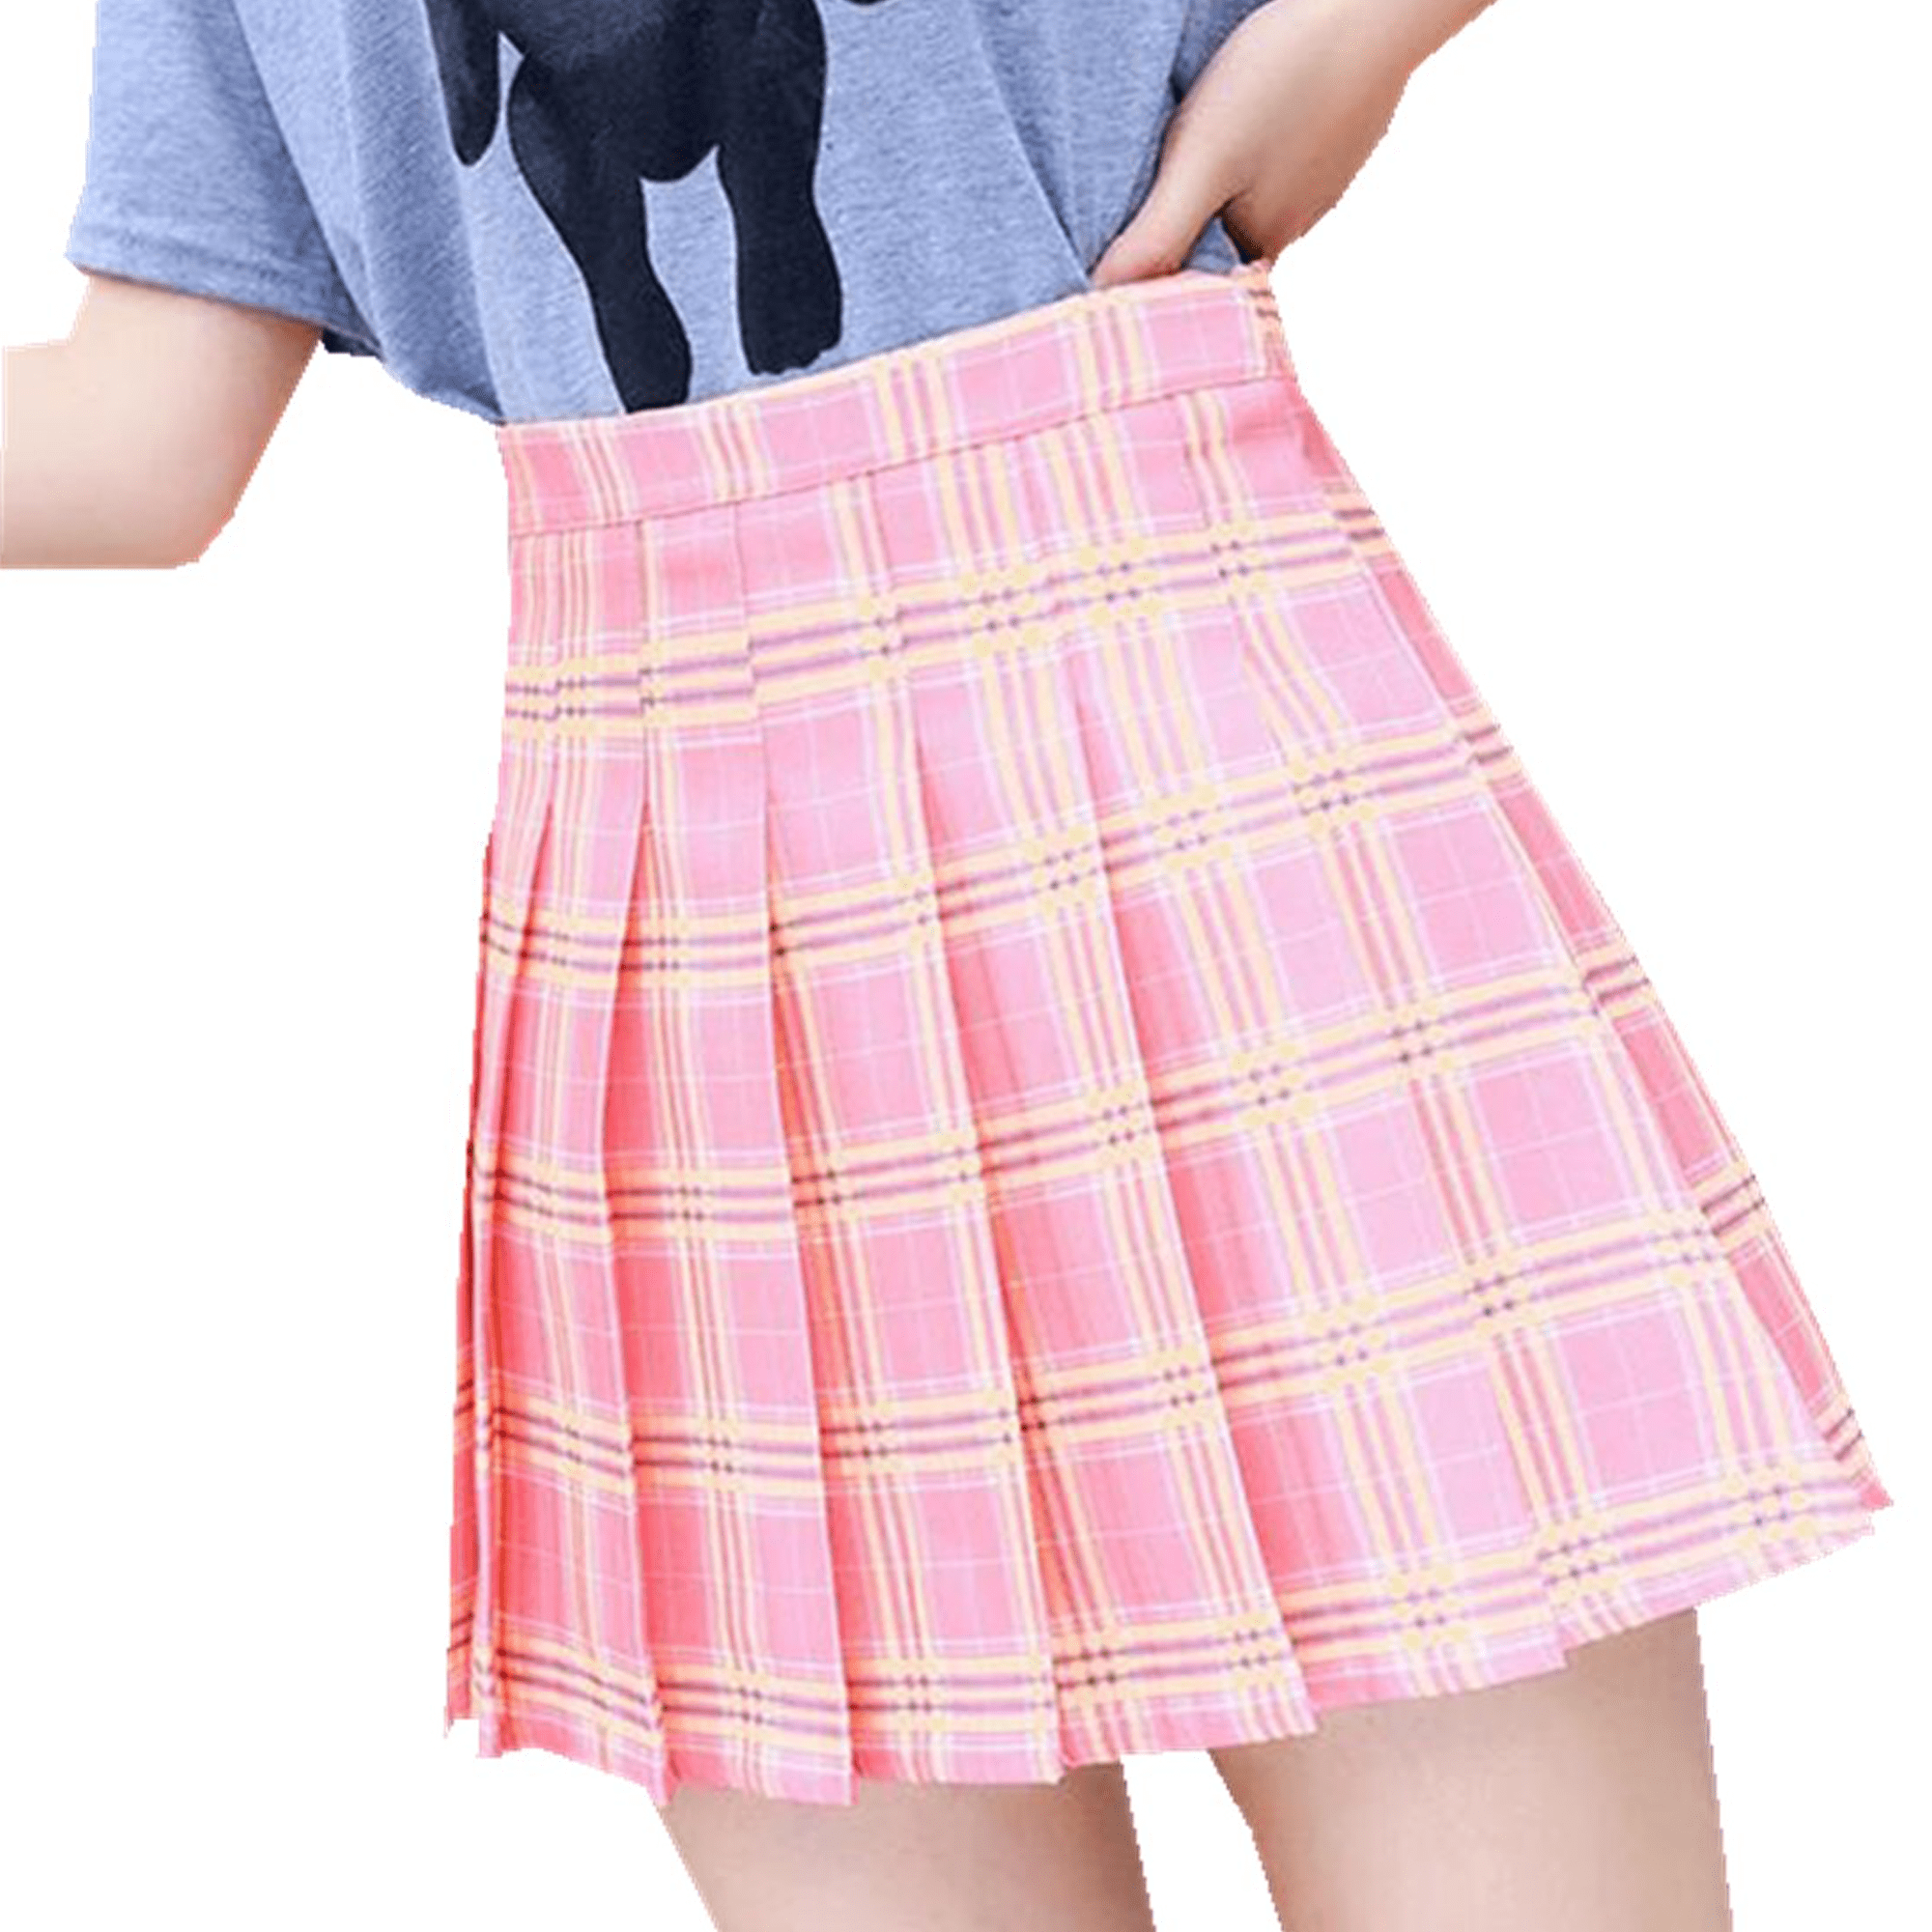 citgeett - Citgeett Women Teen Girls Plaid Pleated Skirt with Leggings ...